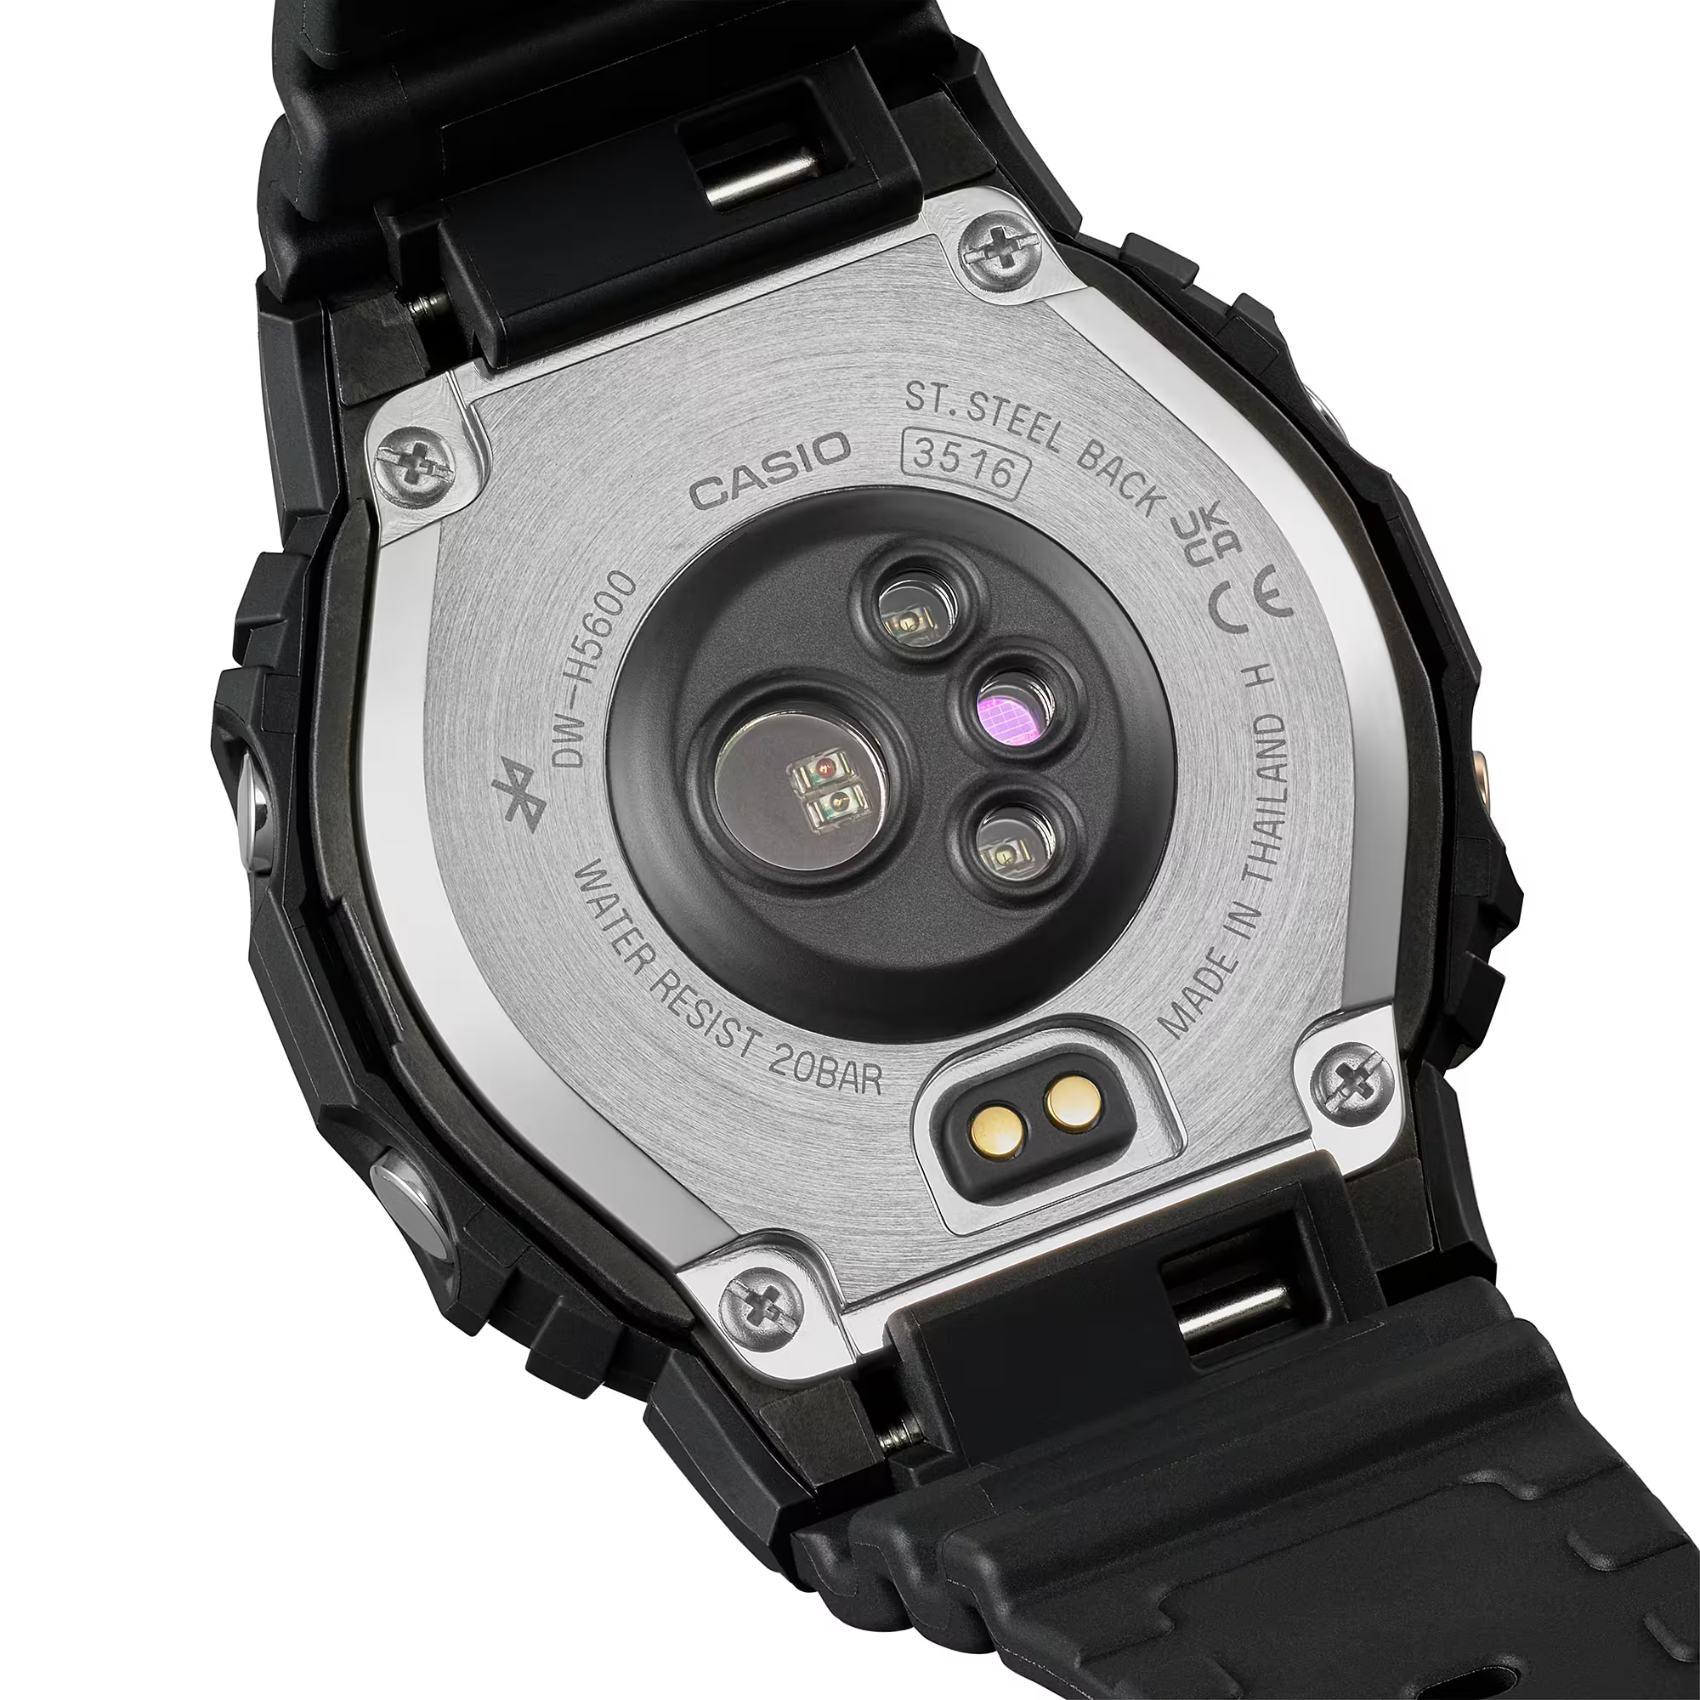 Προπονητικό ρολόι smartwatch G-Squad Casio G-Shock DW-H5600MB-1ER Solar με μαύρο καουτσούκ λουράκι και μαύρο καντράν διαμέτρου 44,5mm σε τετράγωνο σχημα.